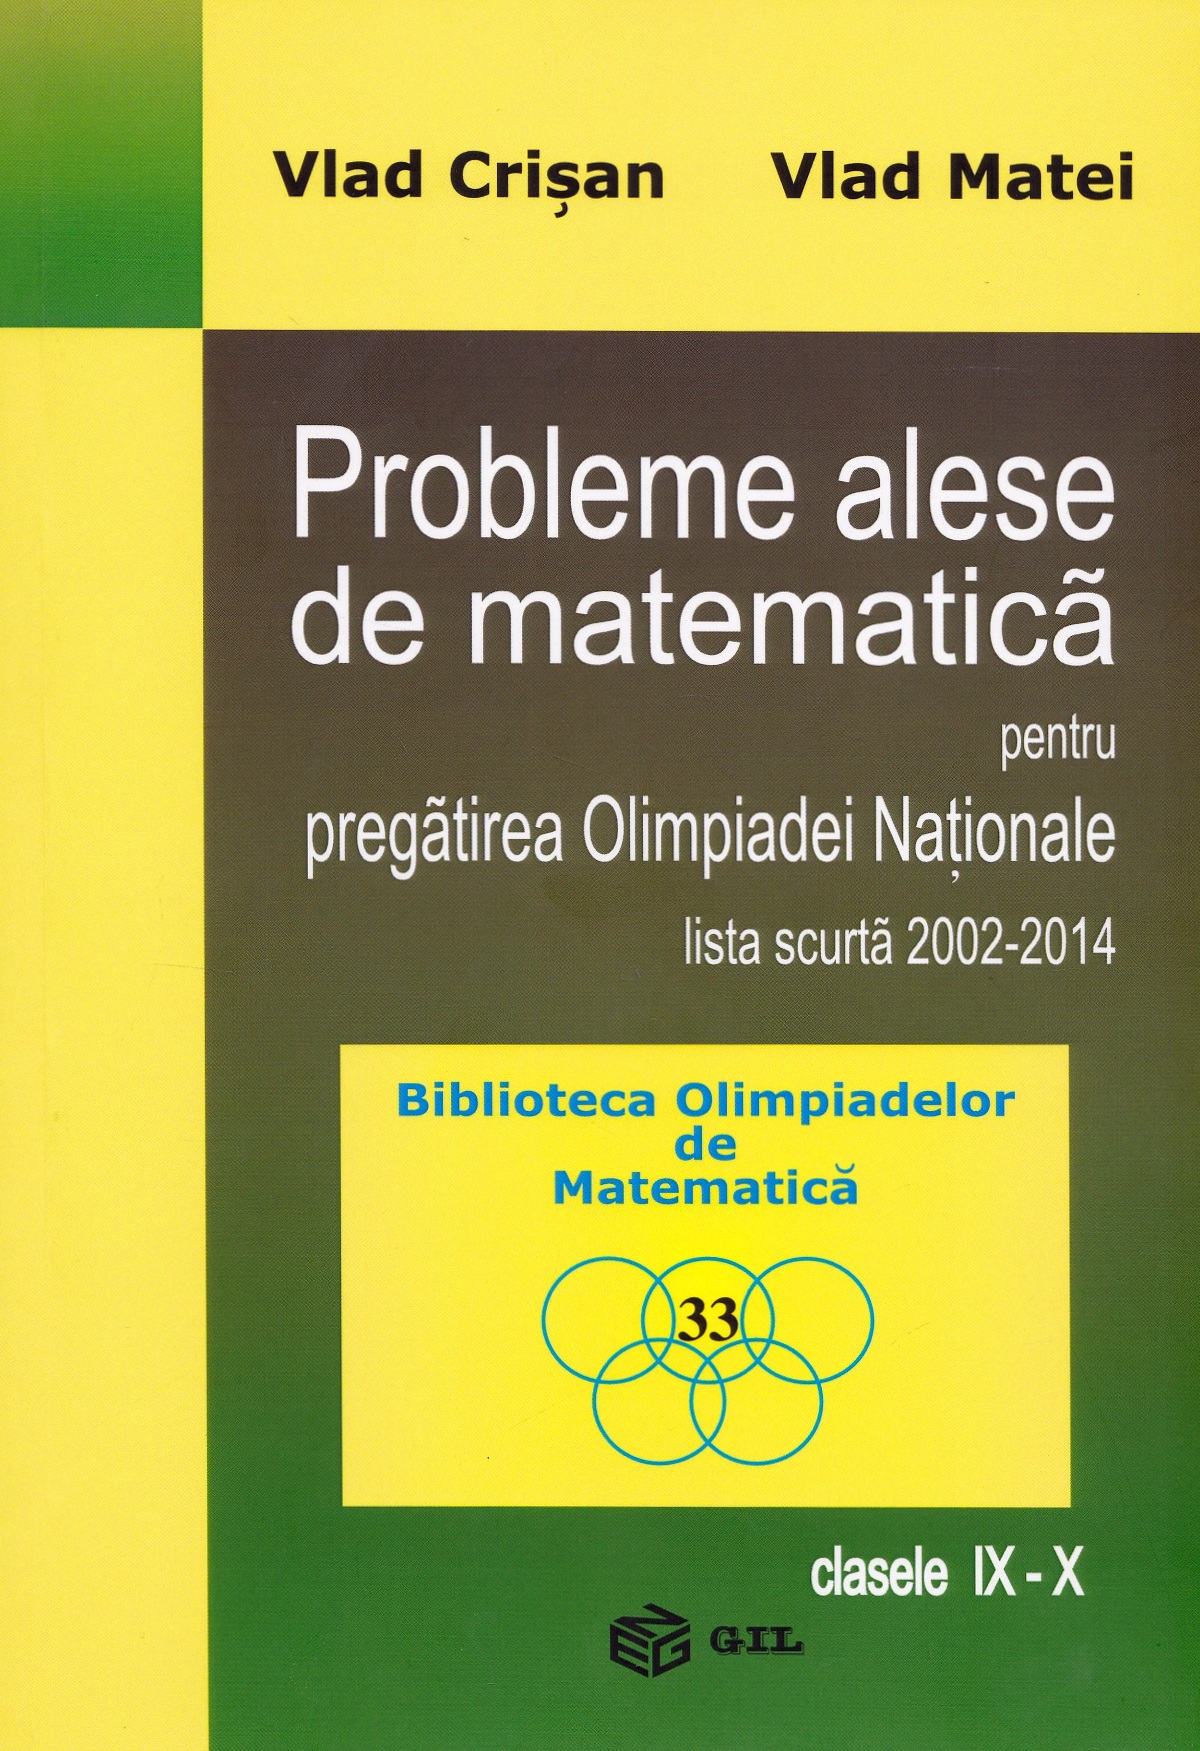 Probleme alese de matematica pentru pregatirea Olimpiadei Nationale - Clasele 9-10 - Vlad Crisan, Vlad Matei